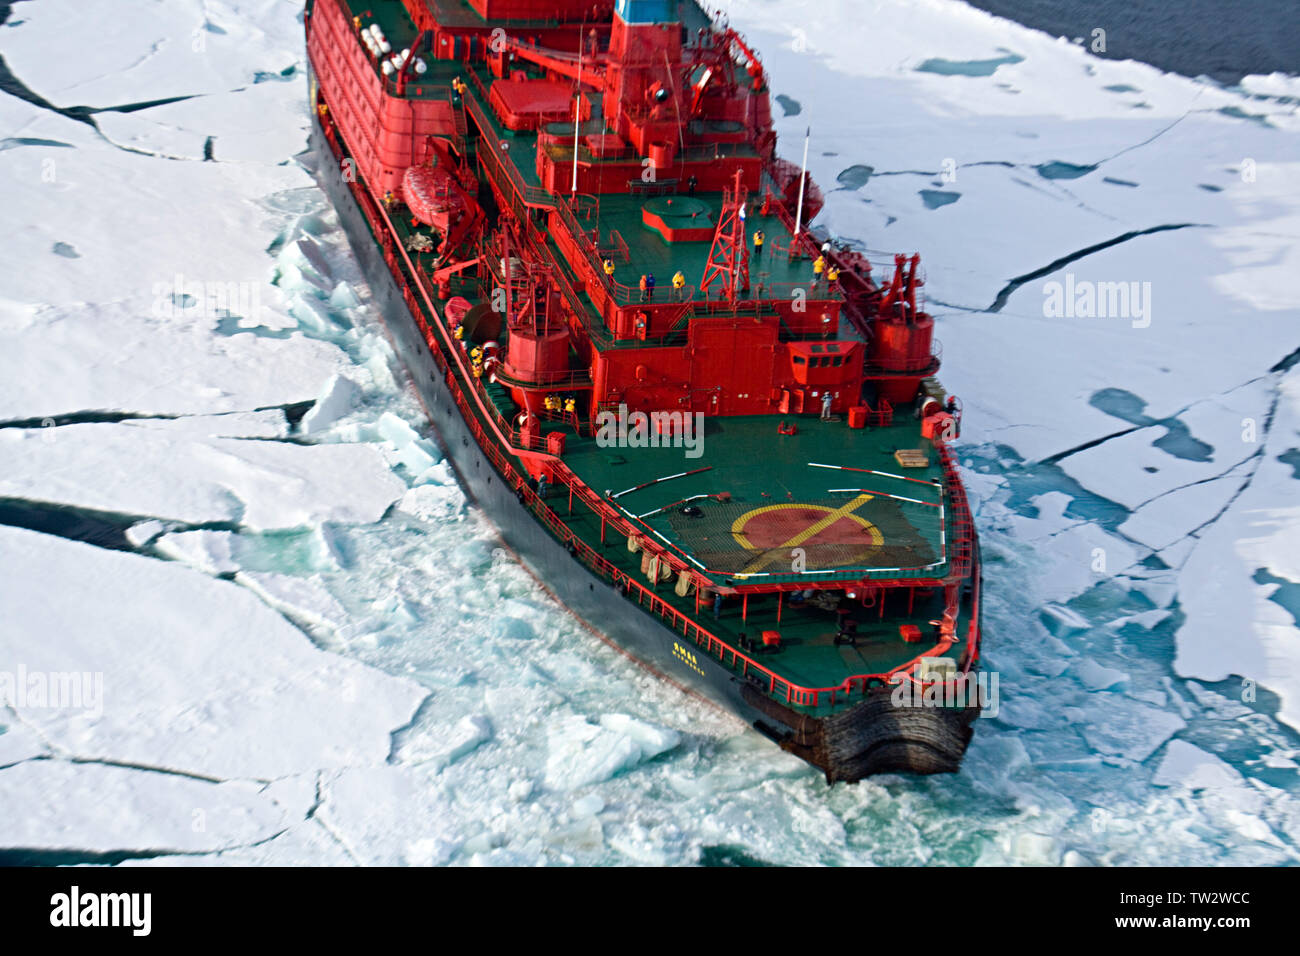 Arktika-Klasse nuklearen Eisbrecher, Yamal, von Quark Expeditionen für die  Reise zum Nordpol gechartert. Luftaufnahme von Schiff im Eis  Stockfotografie - Alamy